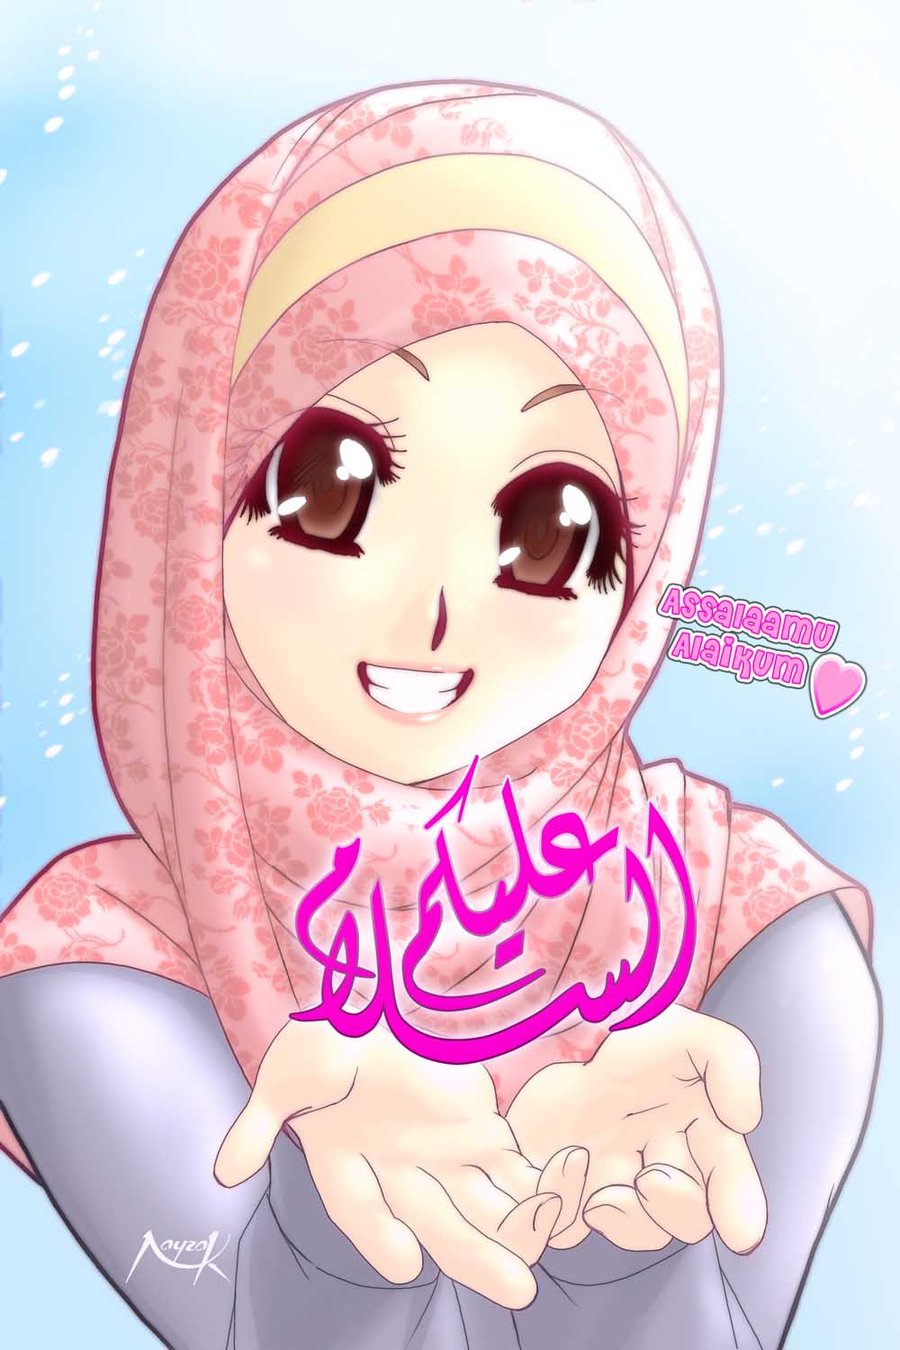 Gambar Ujian Allah Monday 24 April 2017 Gambar Kartun Muslimah